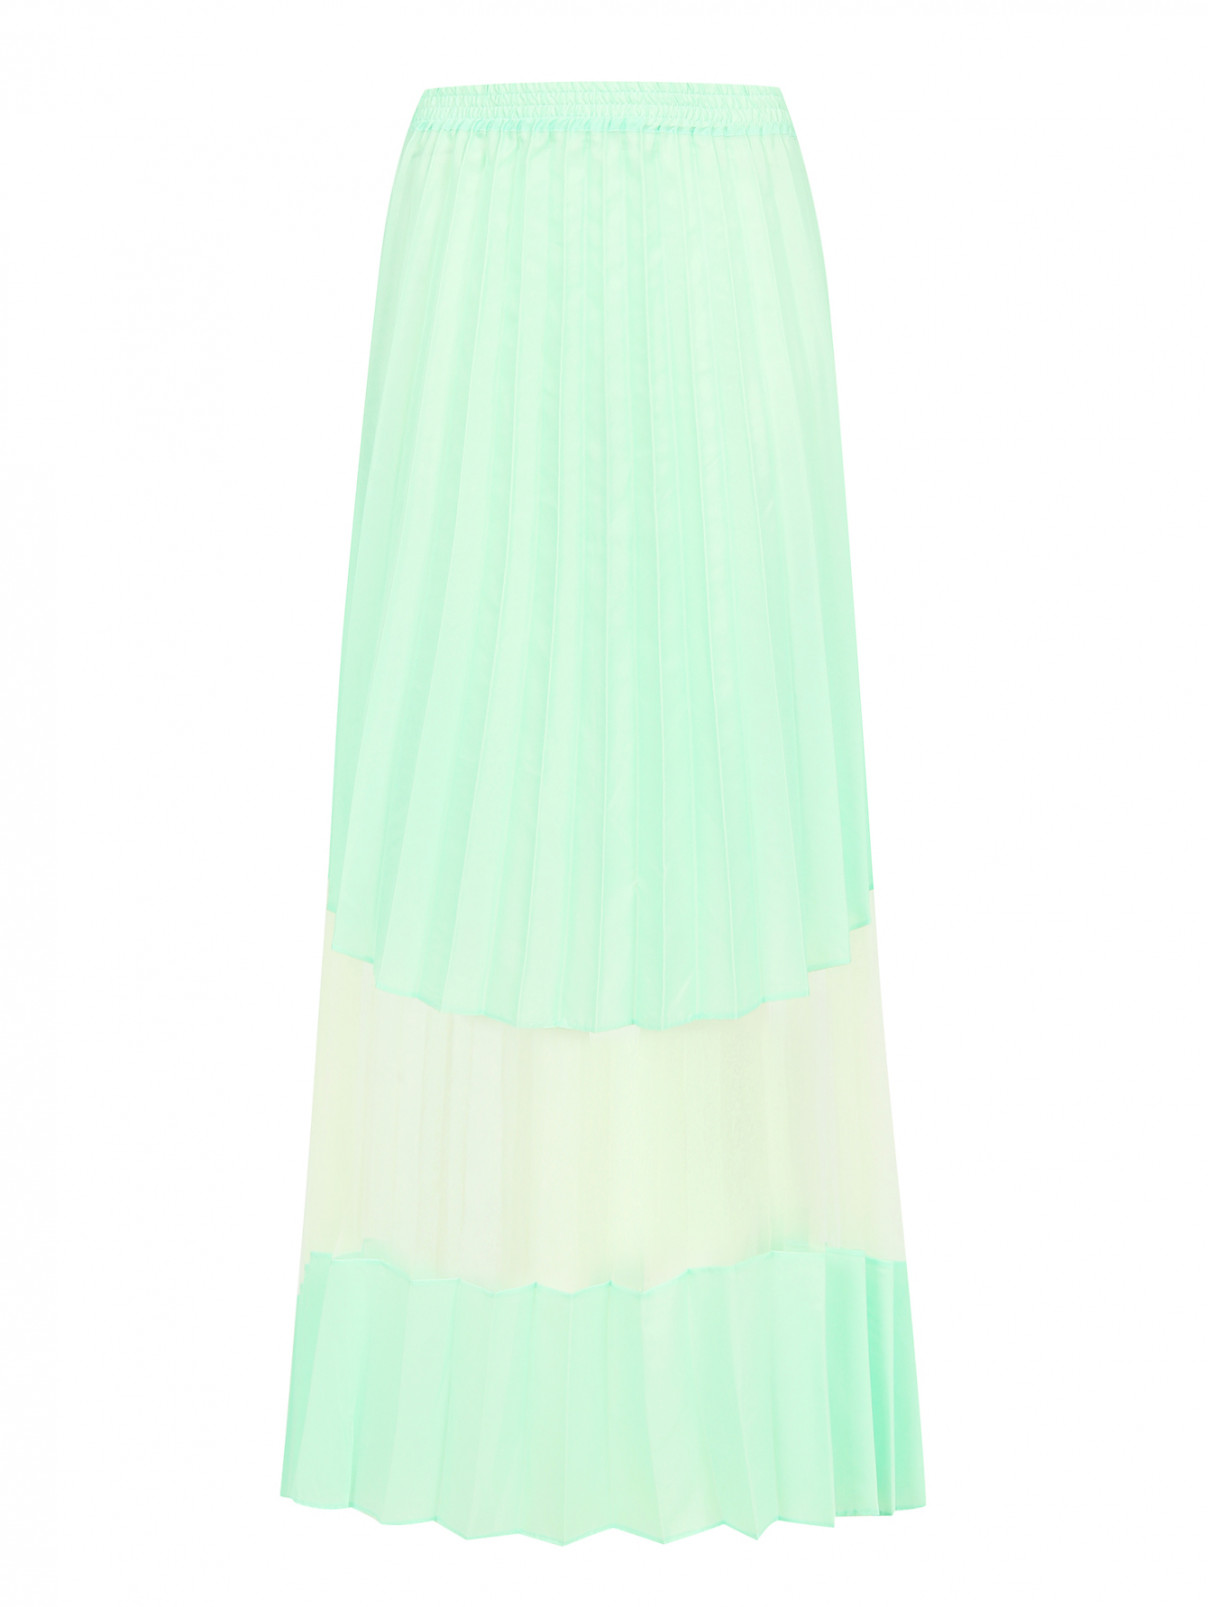 Плиссированная юбка-миди на резинке Jean Paul Gaultier  –  Общий вид  – Цвет:  Зеленый